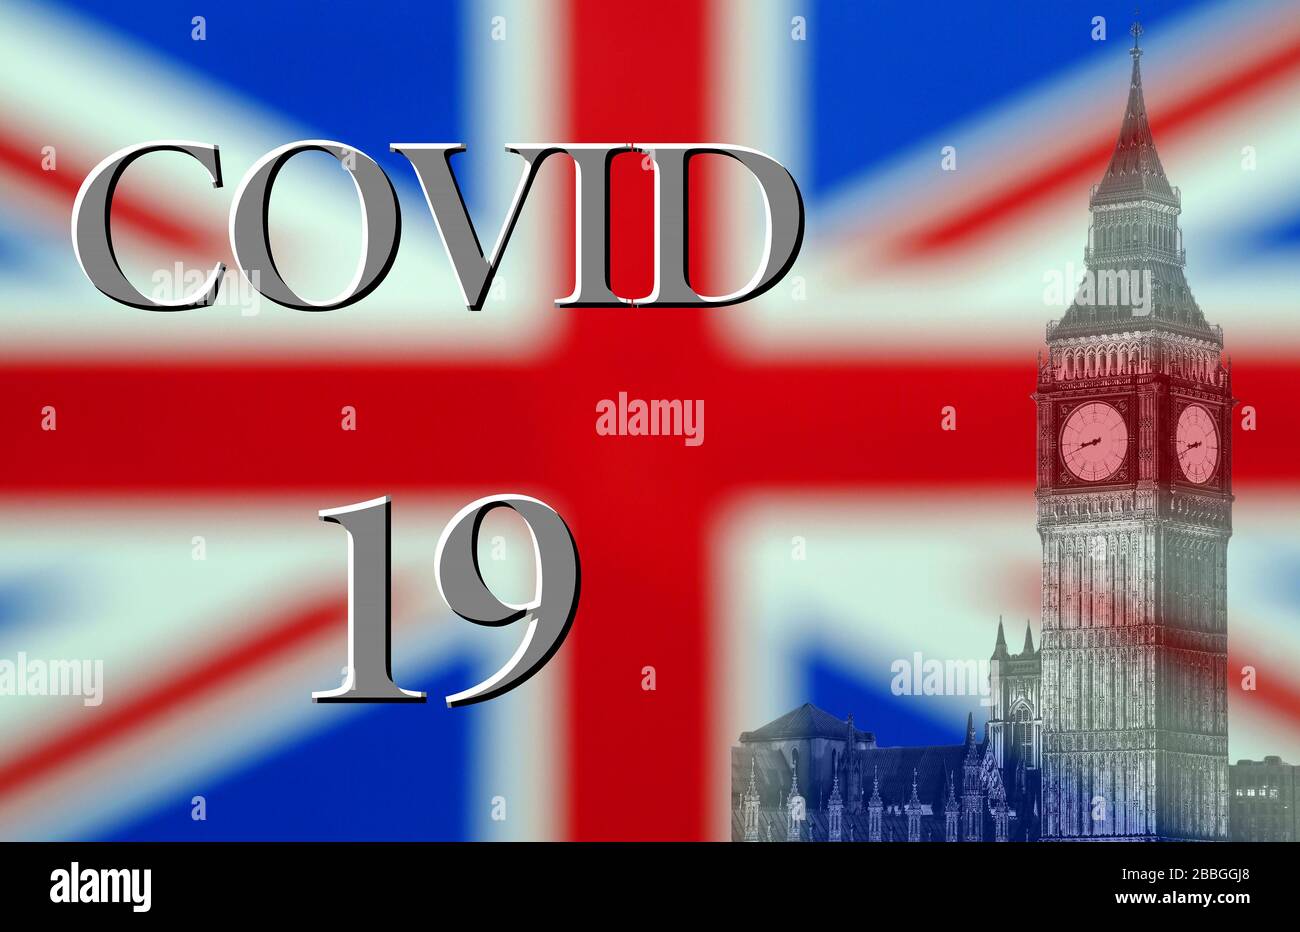 Coronavirus or Covid 19 Outbreak, England UK, Composite with British Union Jack Flag Stock Photo